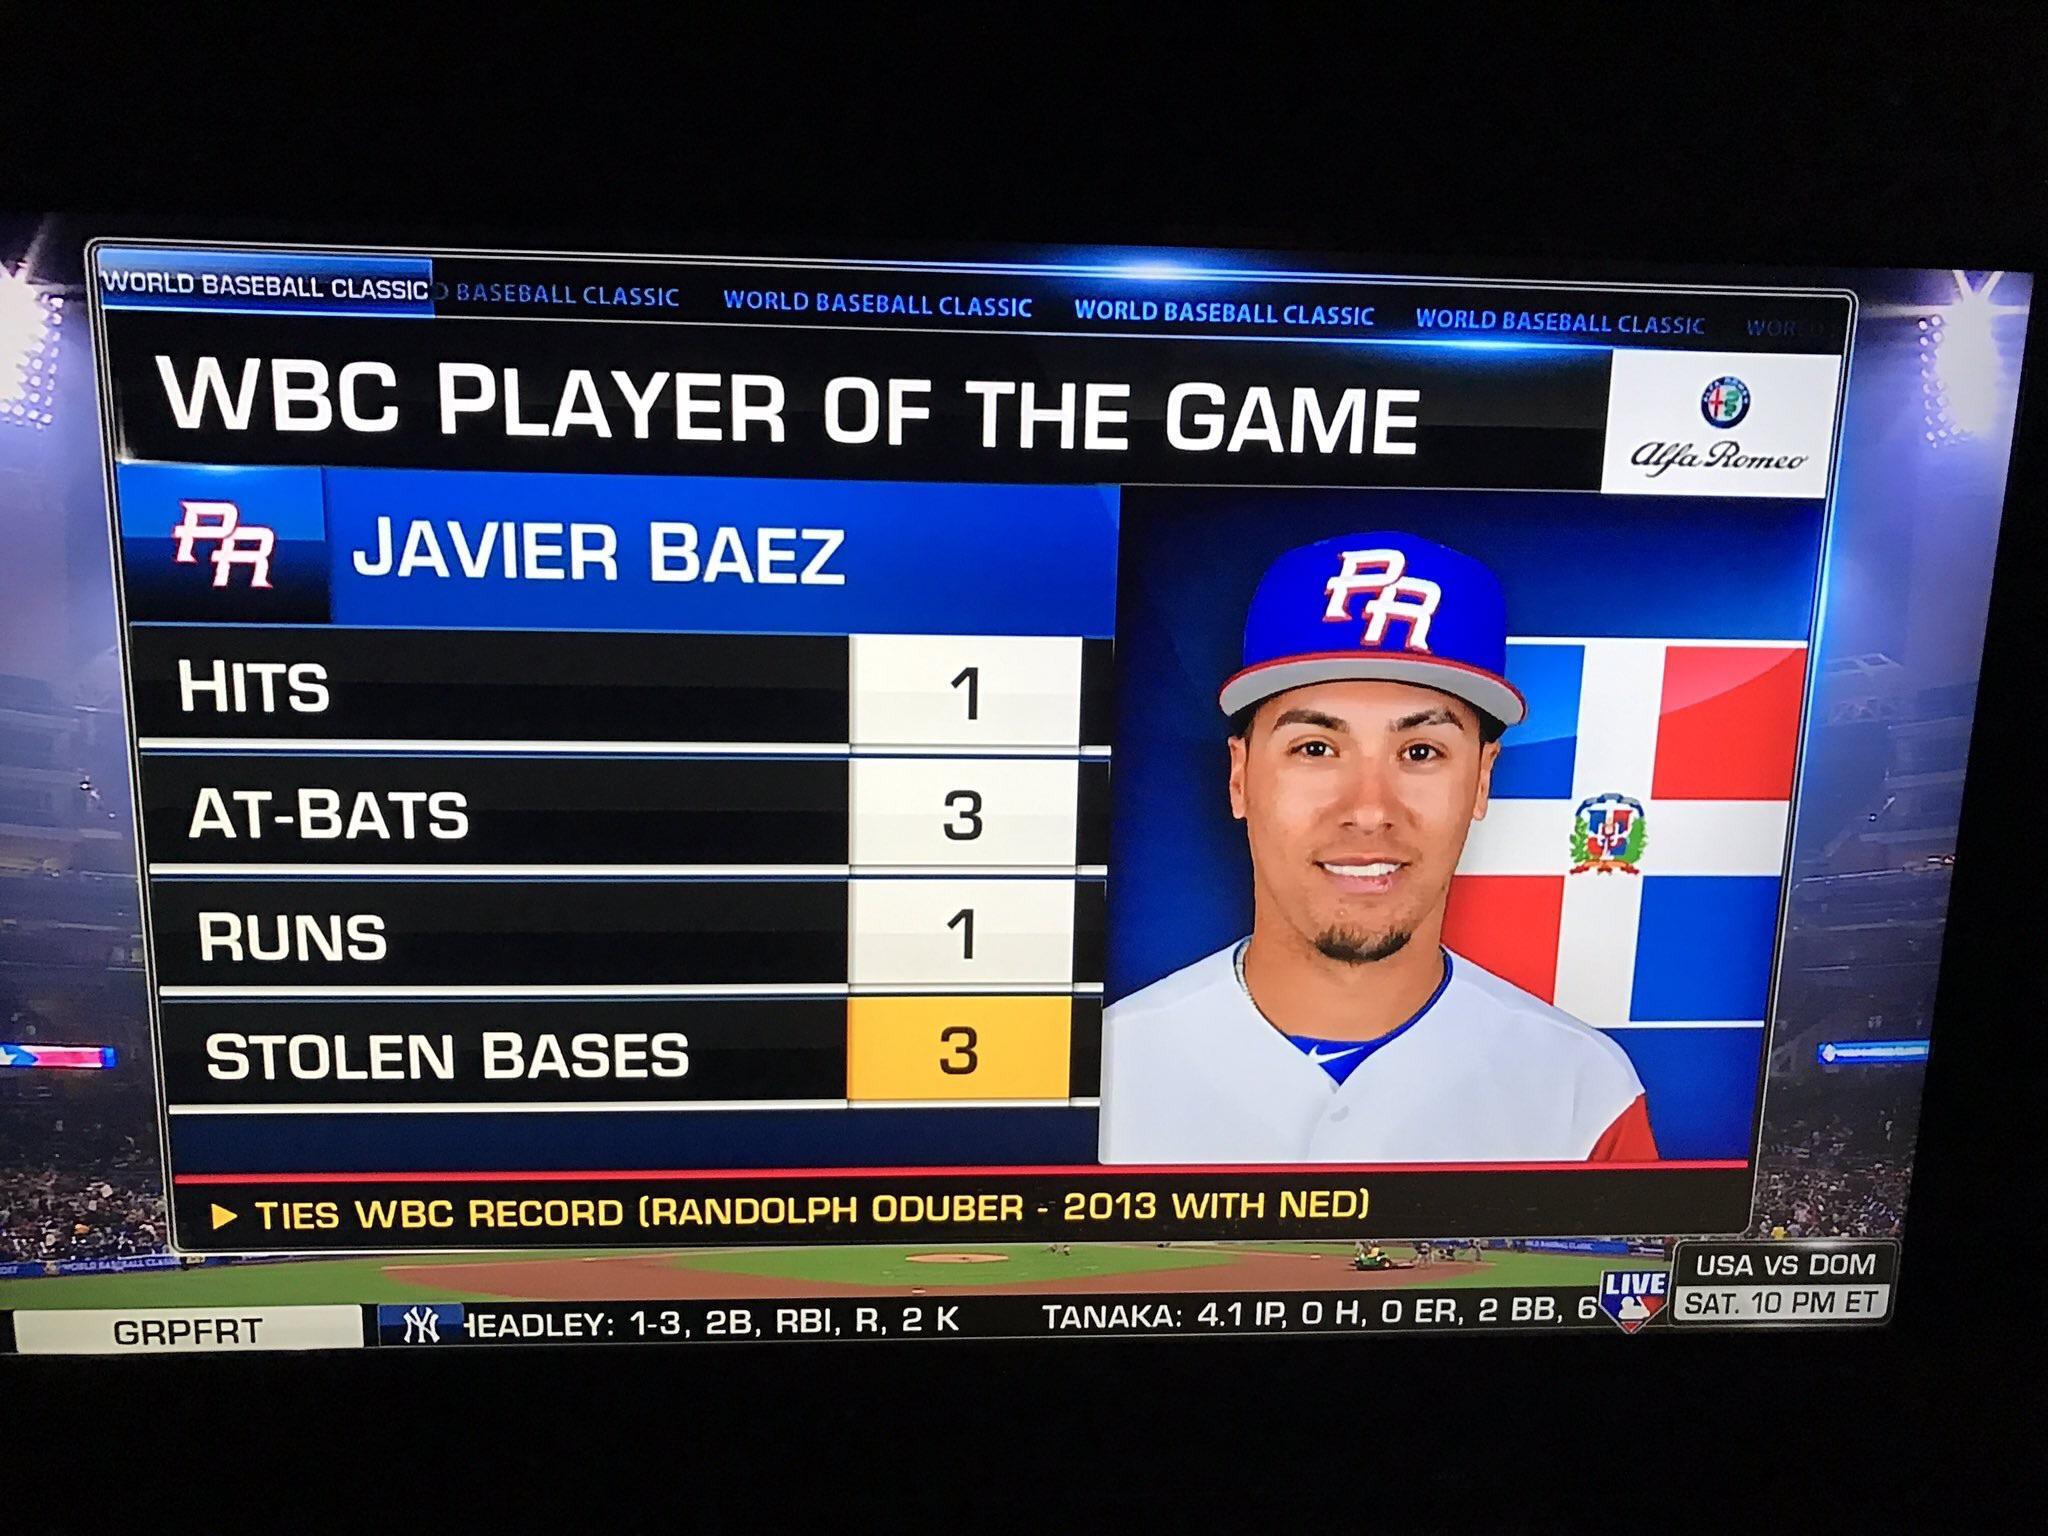 Breaking News: Javier Baez is now Dominican